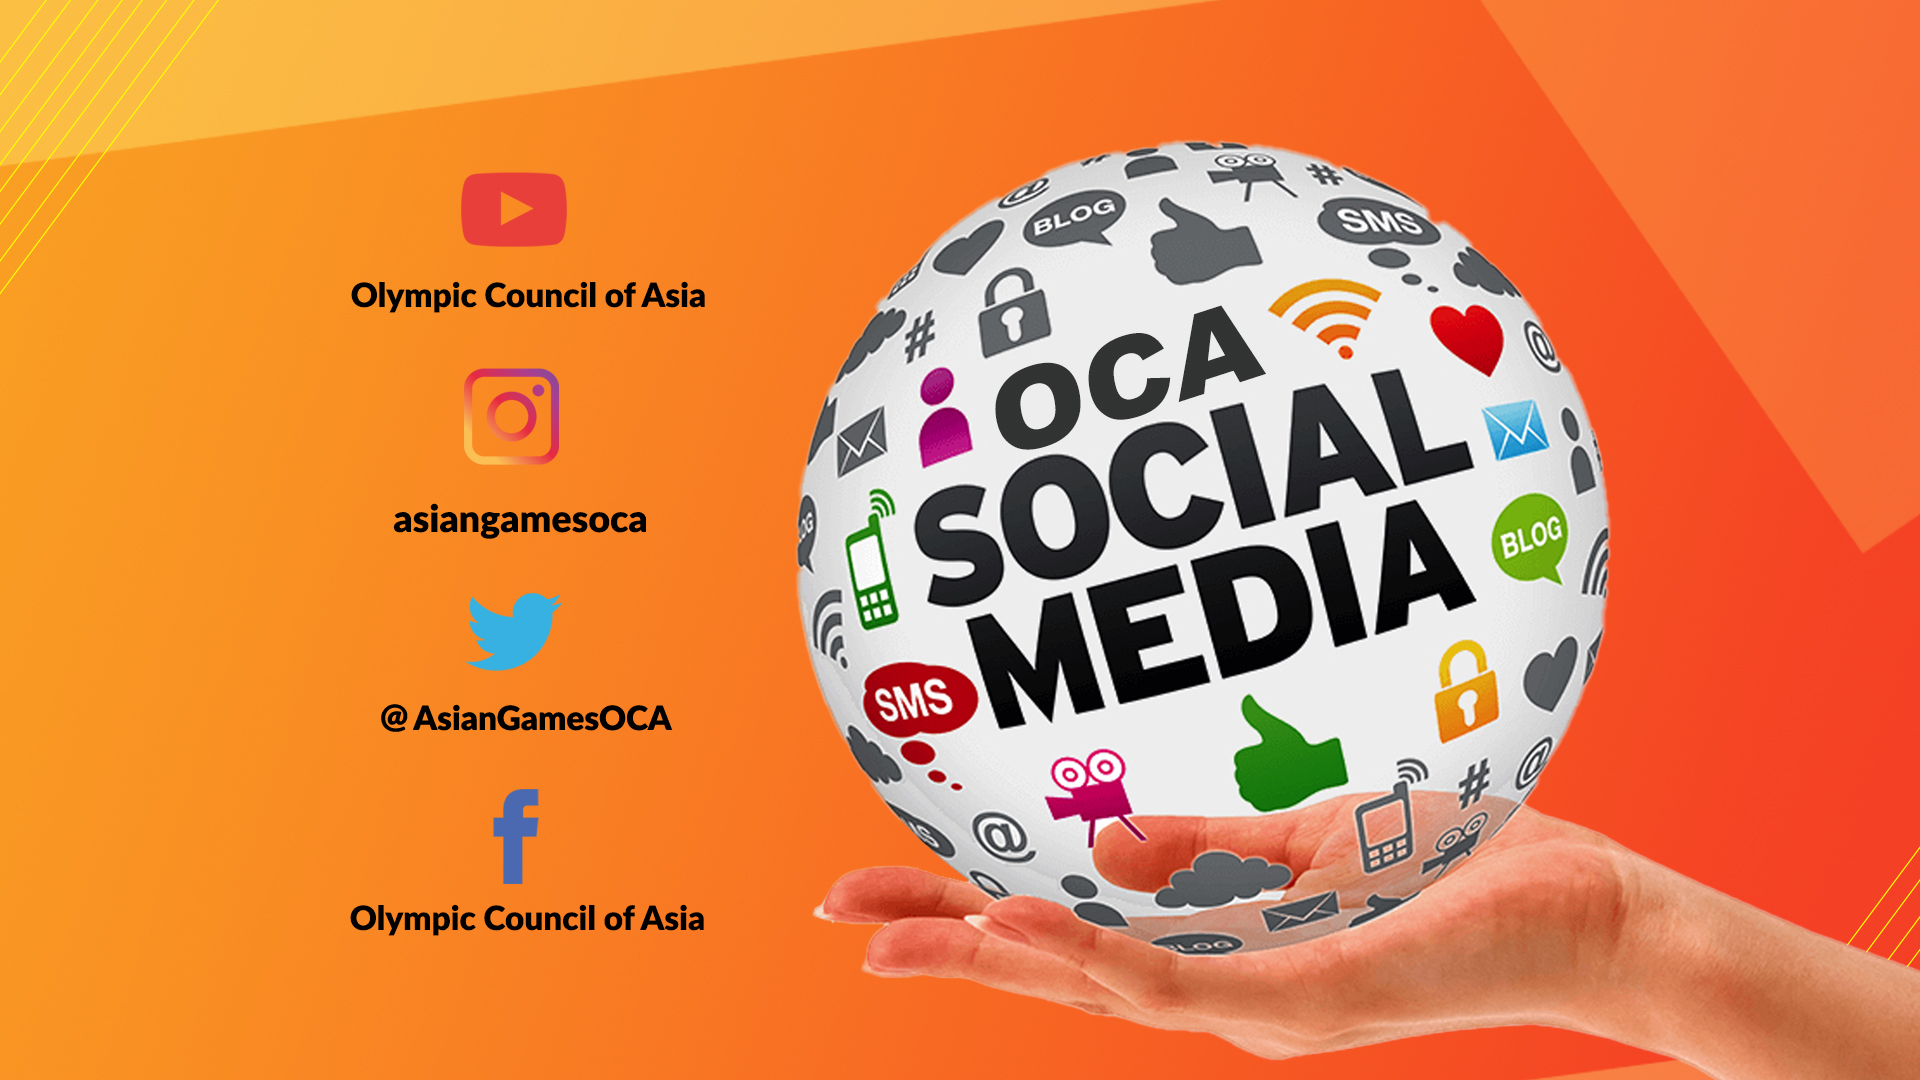 OCA Social Media